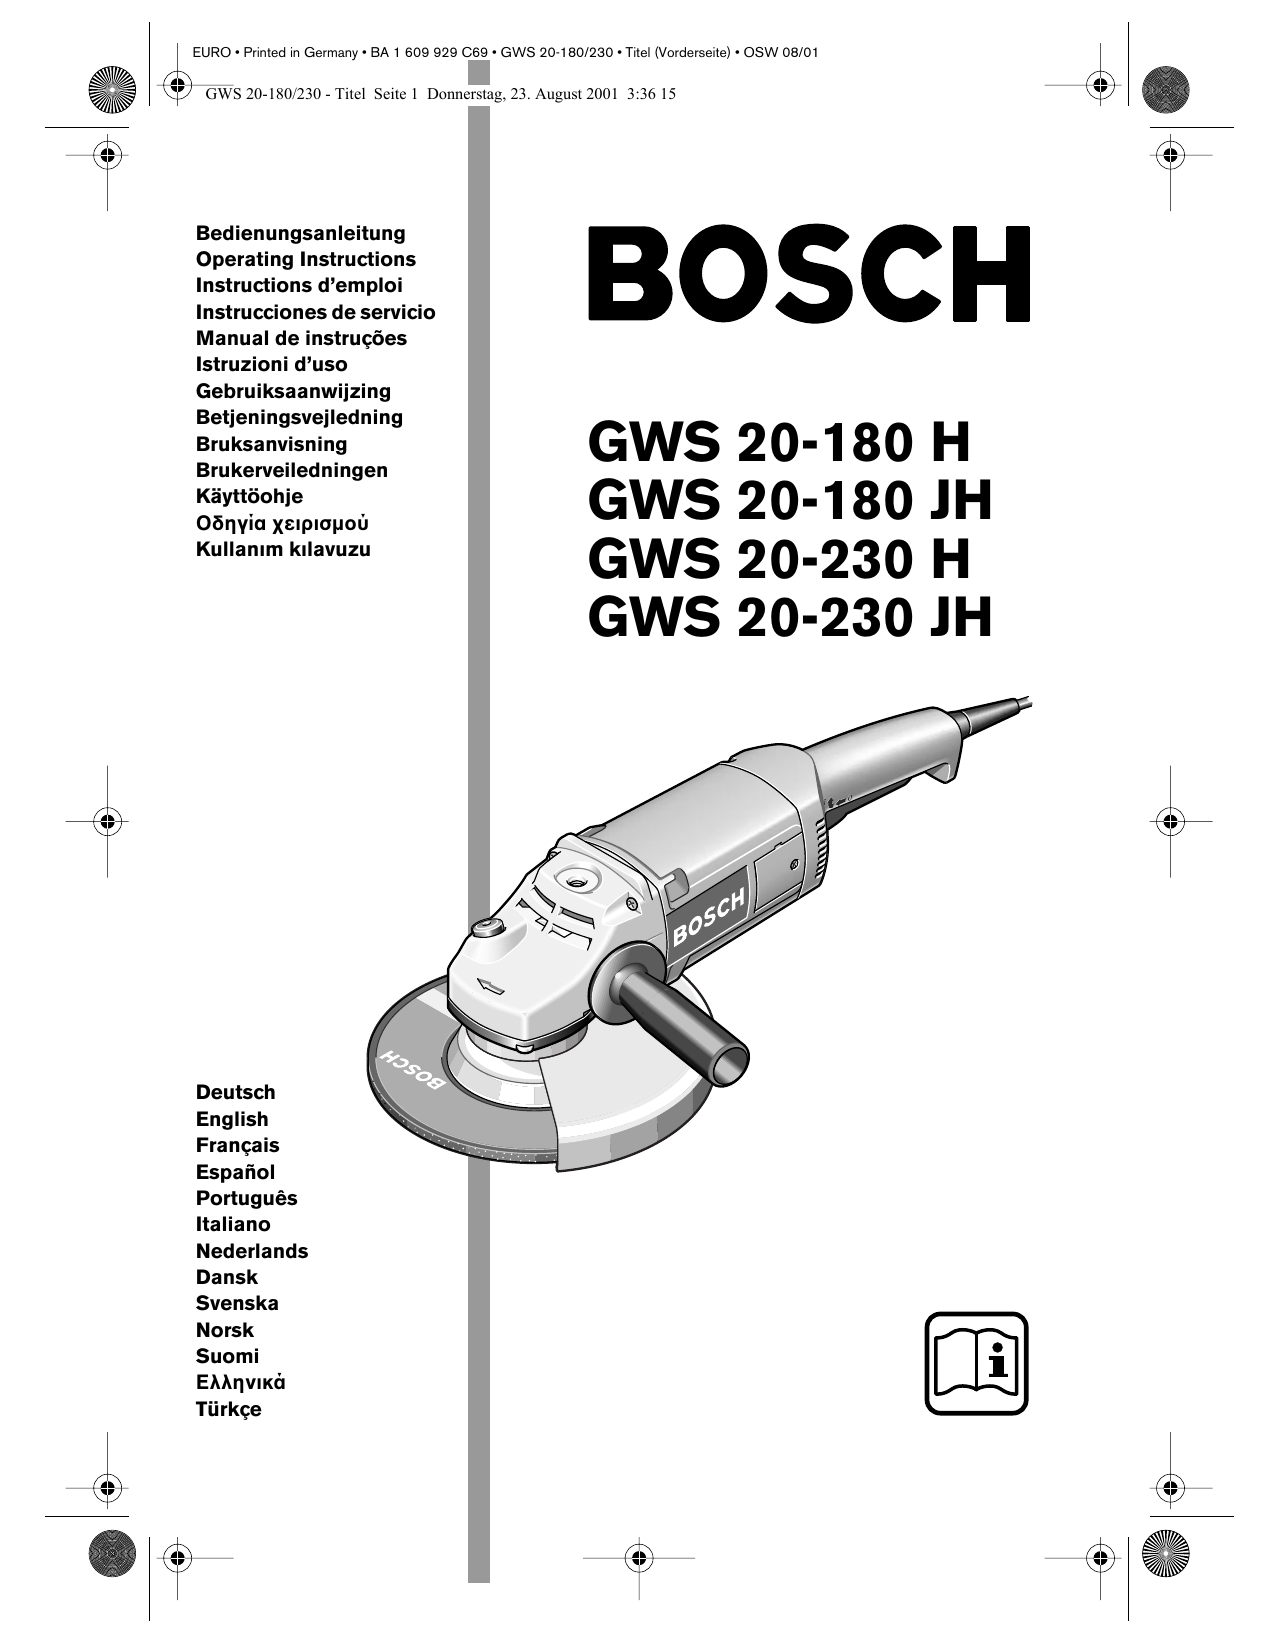 Bosch GWS 20-180 H Professional, GWS 20-230 H Professional, GWS 20 